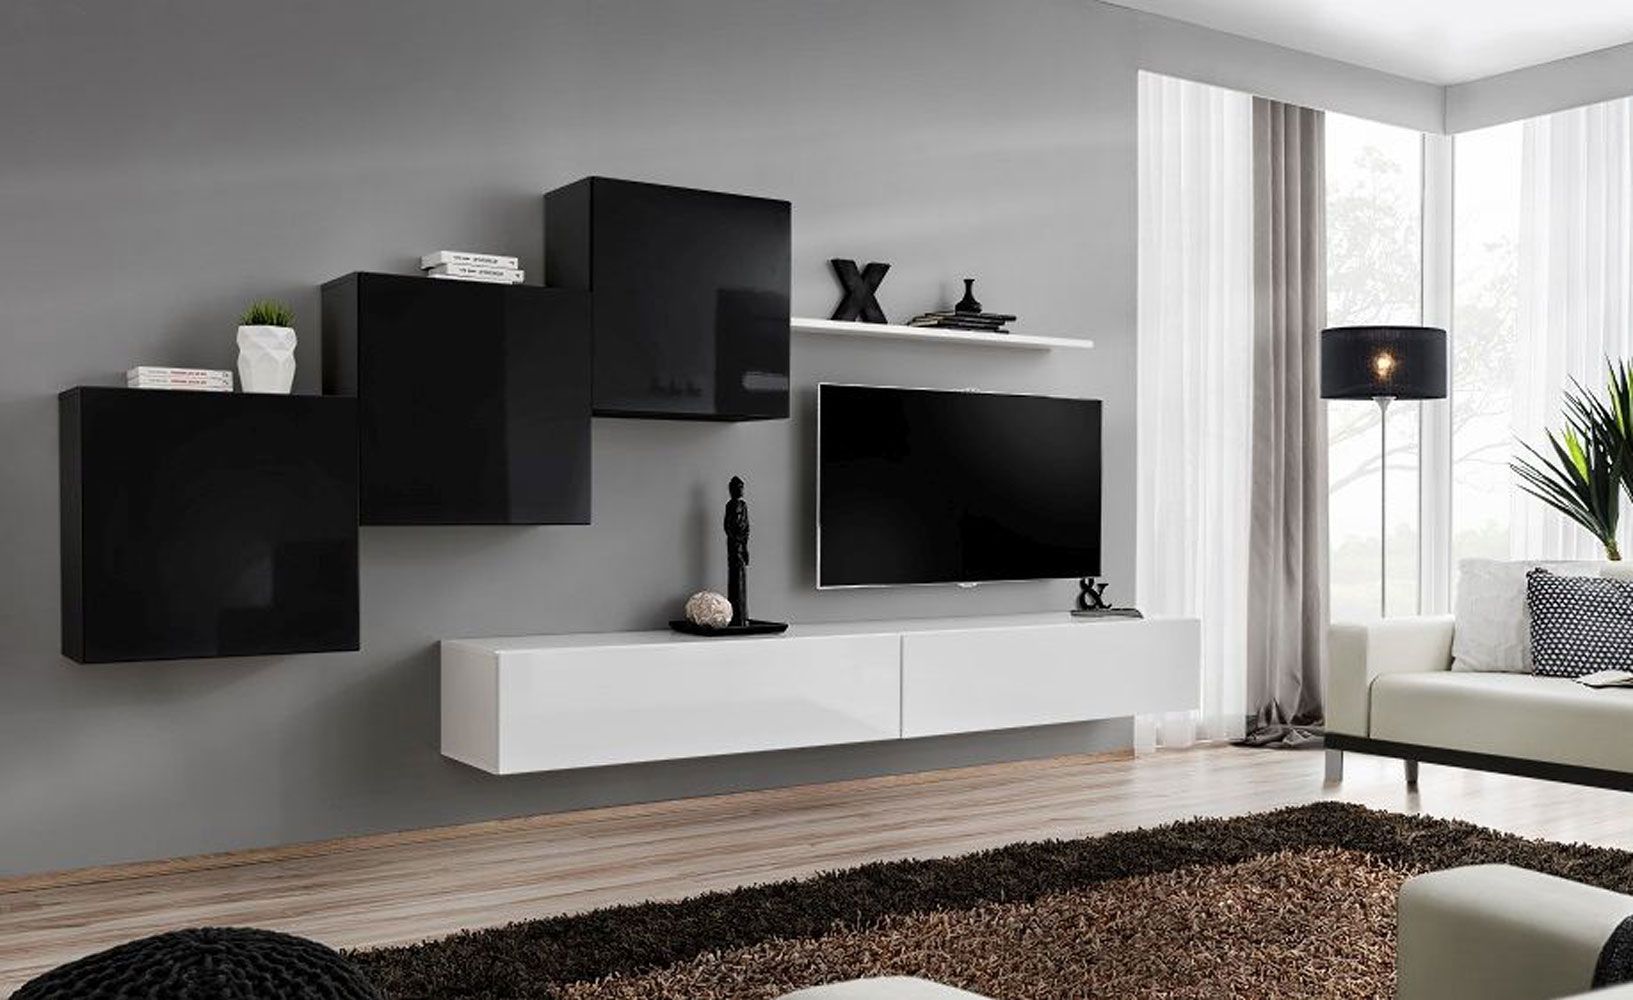 Elégant mur de salon Balestrand 150, Couleur : Noir / Blanc - Dimensions : 150 x 330 x 40 cm (H x L x P), avec fonction push-to-open